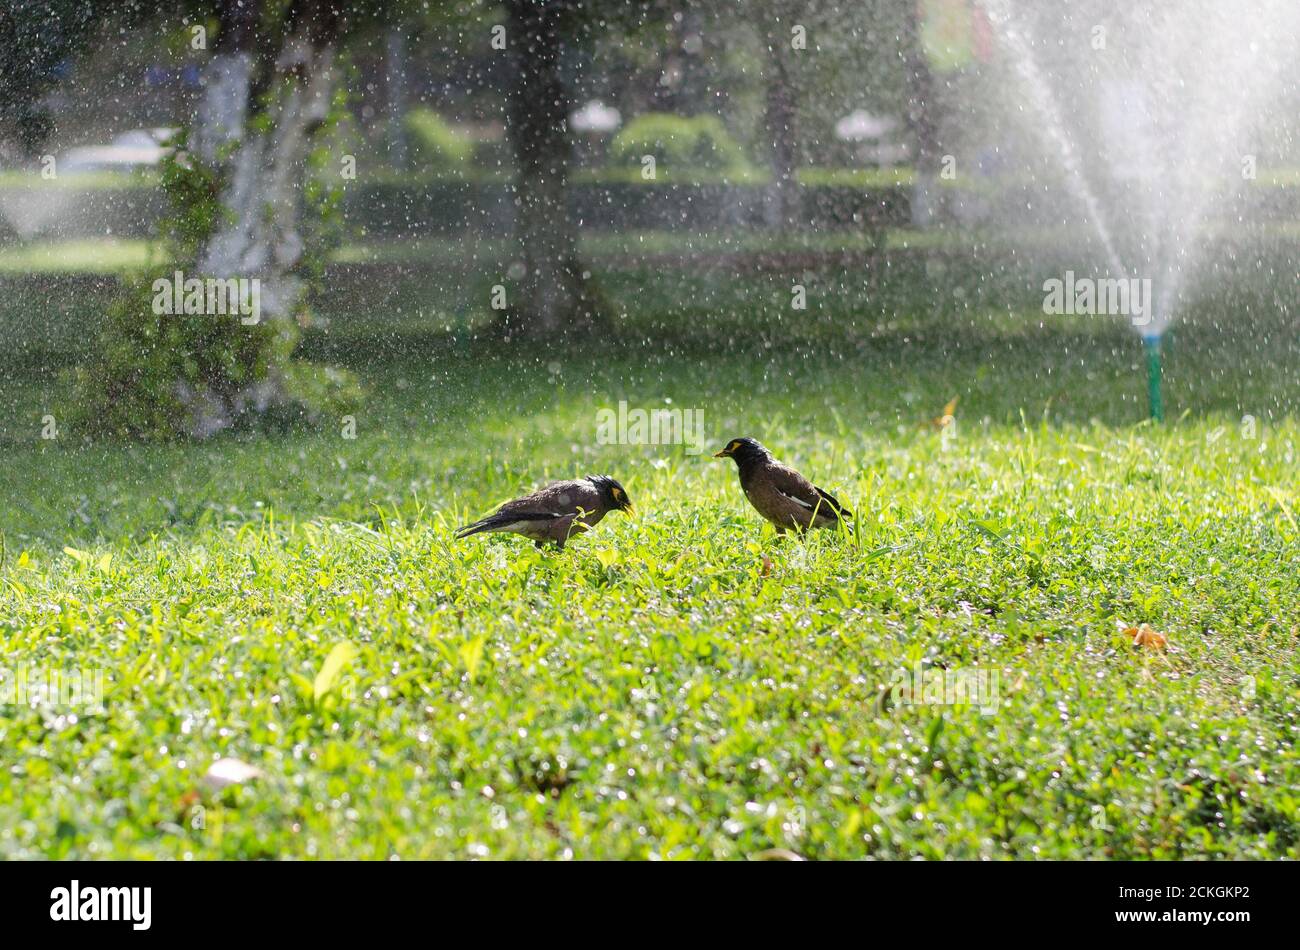 Deux étoiles afghanes marchent sur l'herbe verte au soleil et baignez-vous dans le jet d'une fontaine Banque D'Images